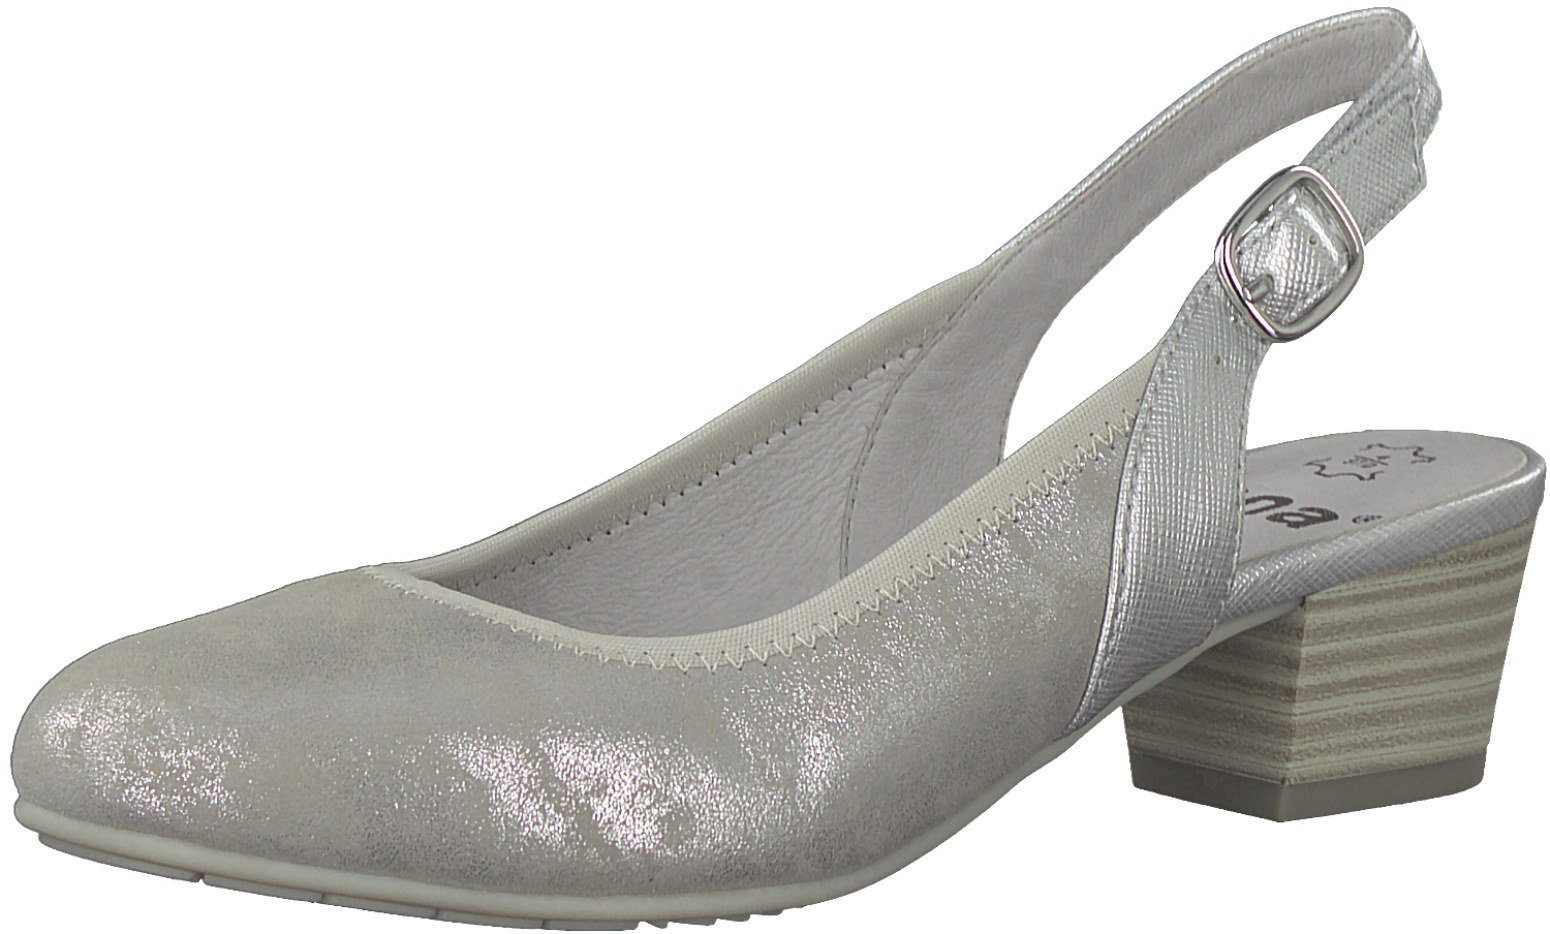 Туфли женские Jana, цвет: серебристый. 8-8-29590-20-212/220. Размер 36